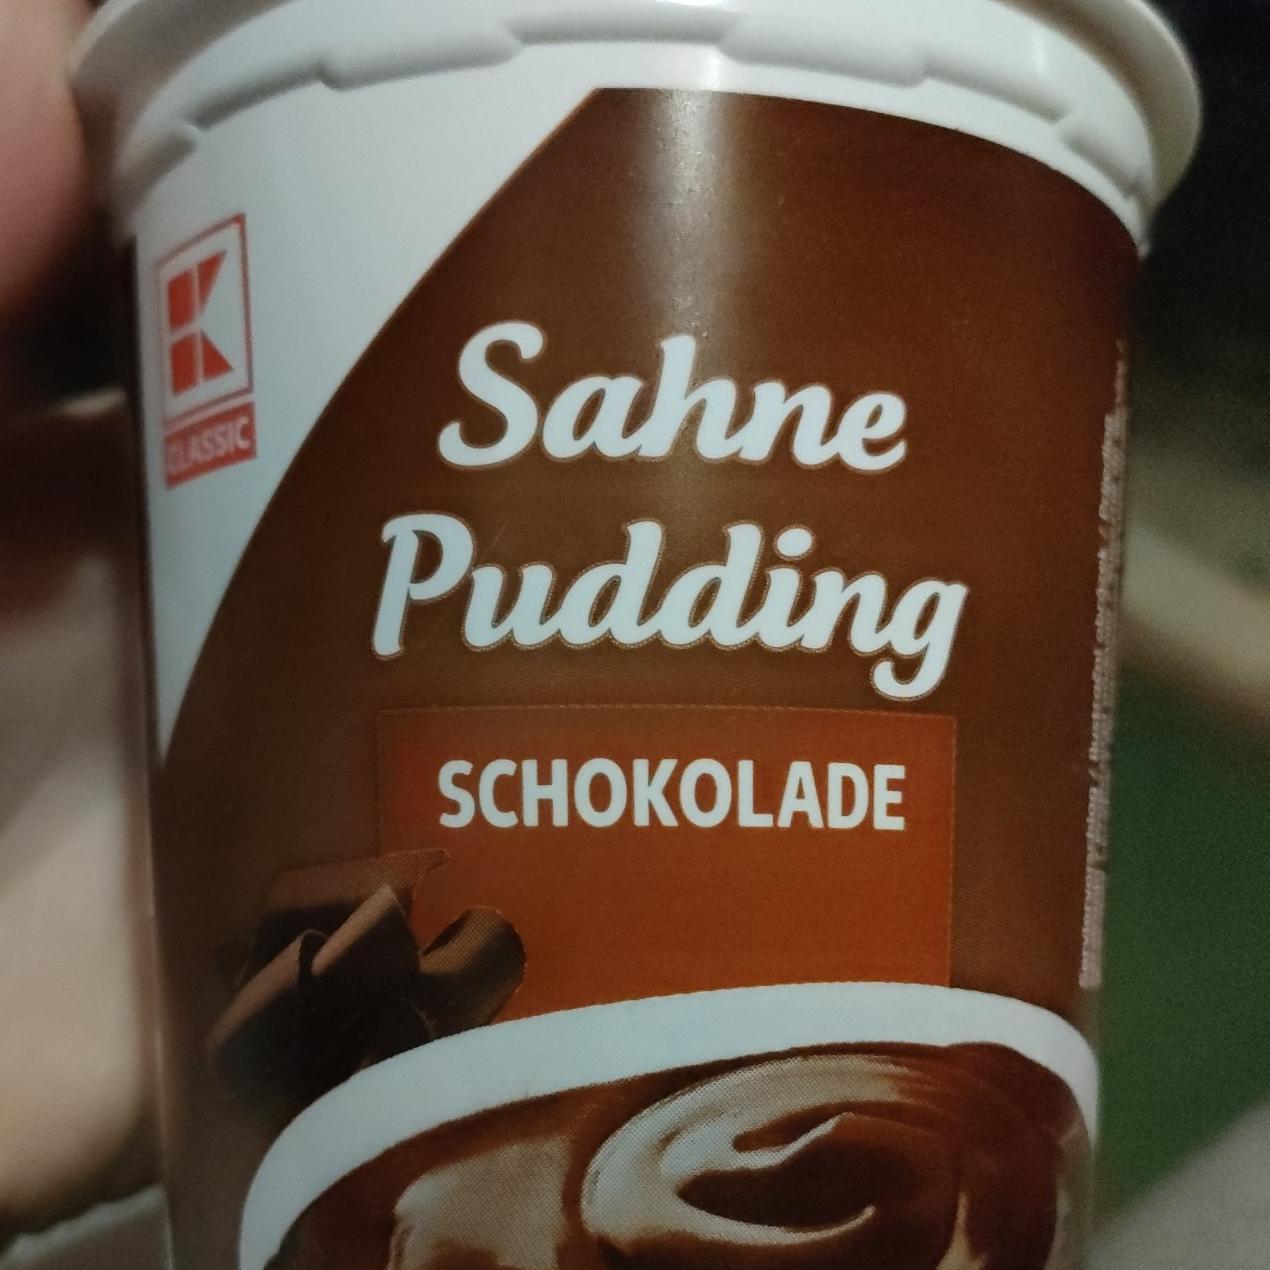 Fotografie - Sahne pudding Schokolade K-Classic